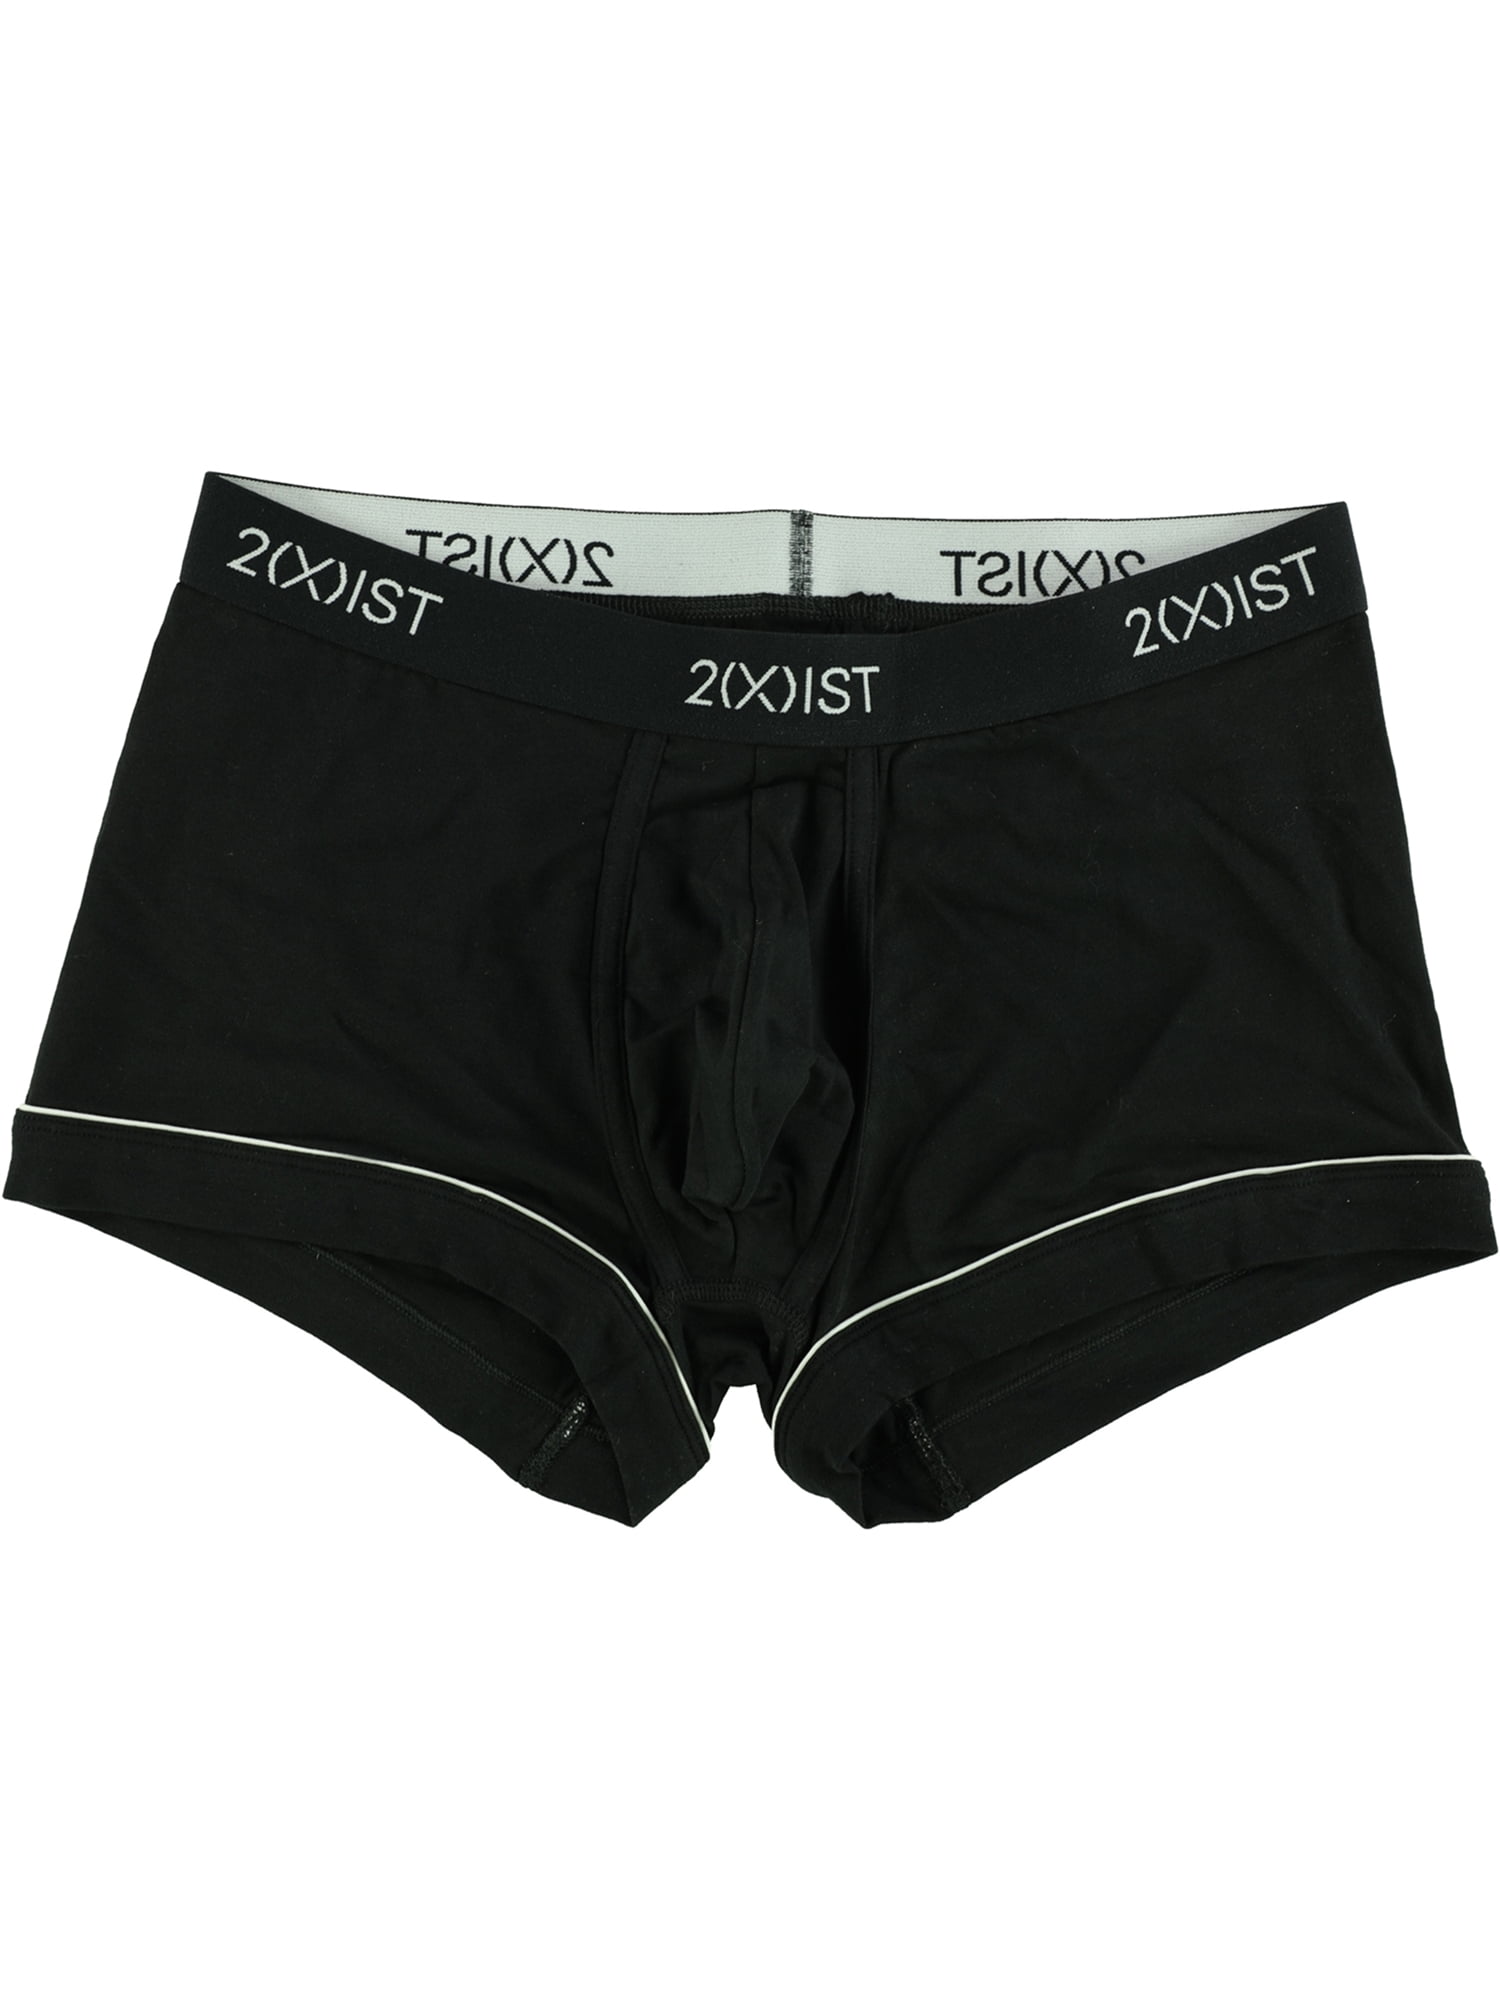 2(X)IST - 2(X)IST Mens Printed Underwear Boxer Briefs - Walmart.com ...